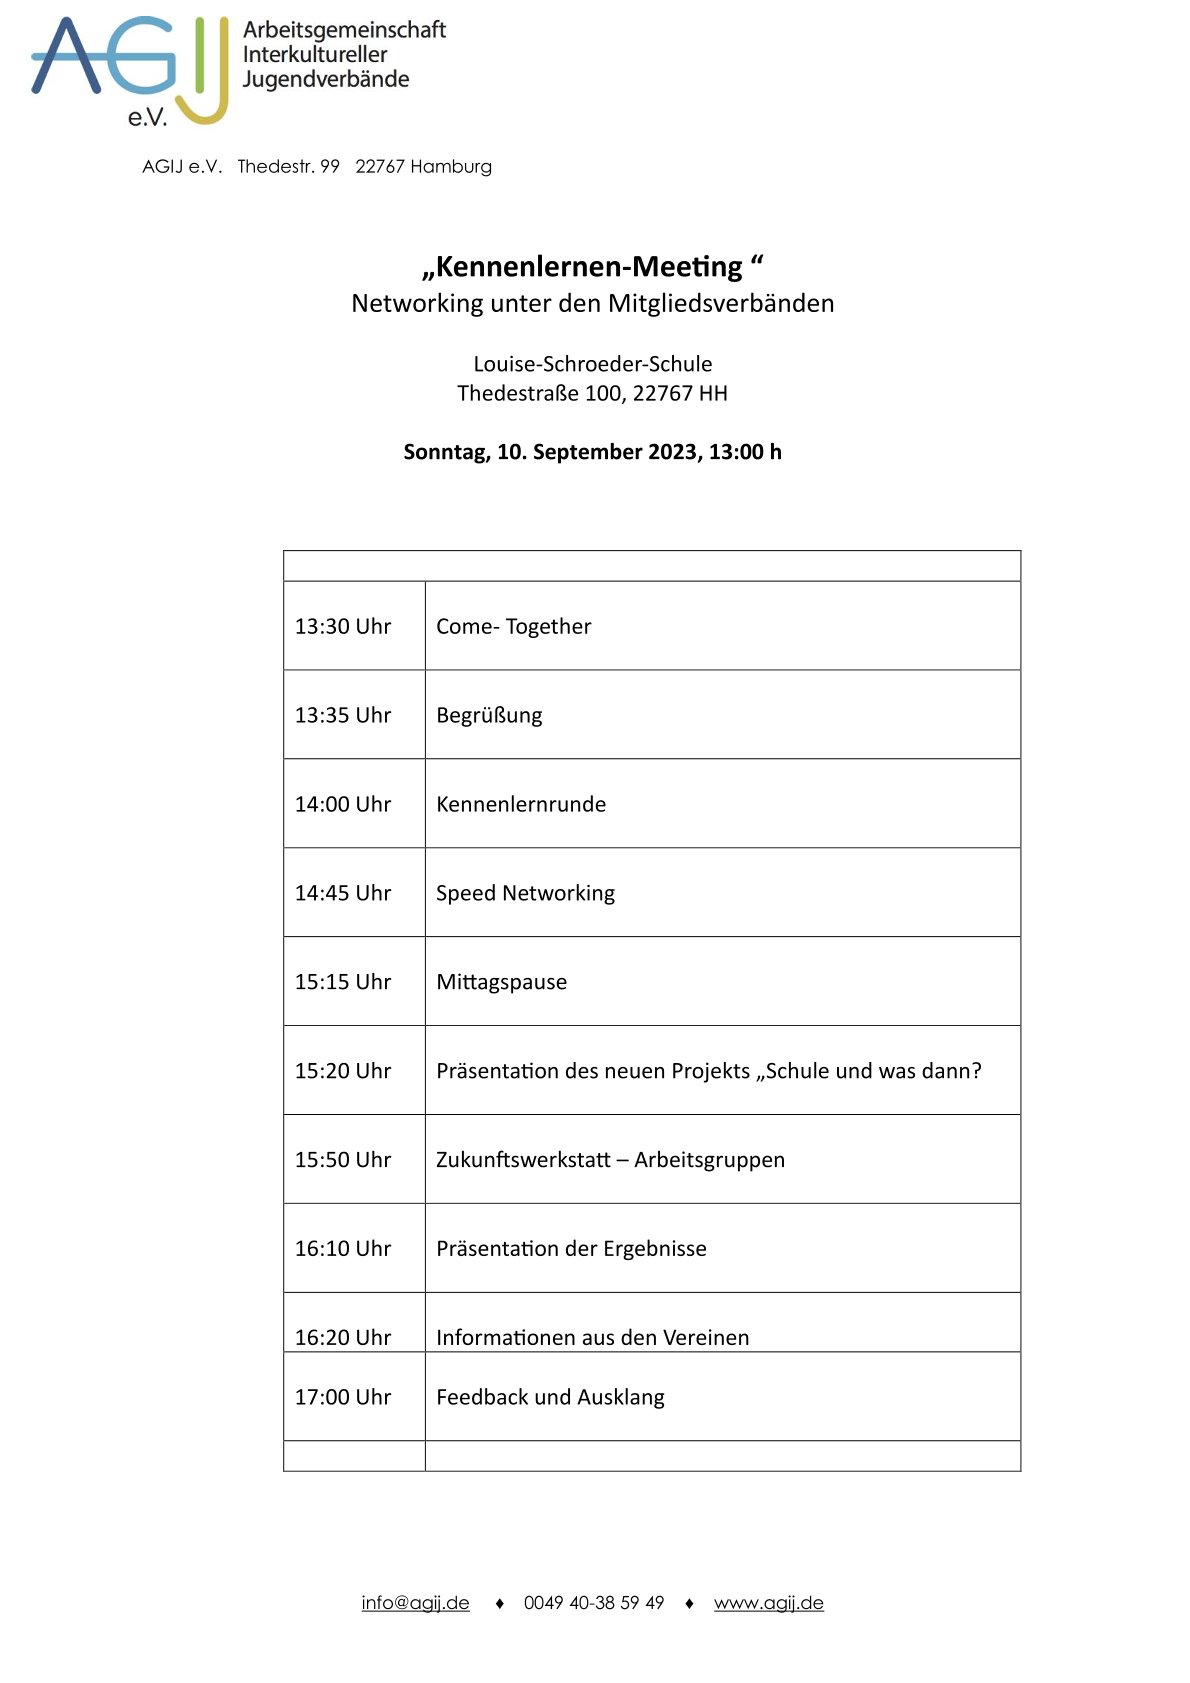 Kennenlermeeting der AGIJ-Verbände | 10.09.23, 13.00 h